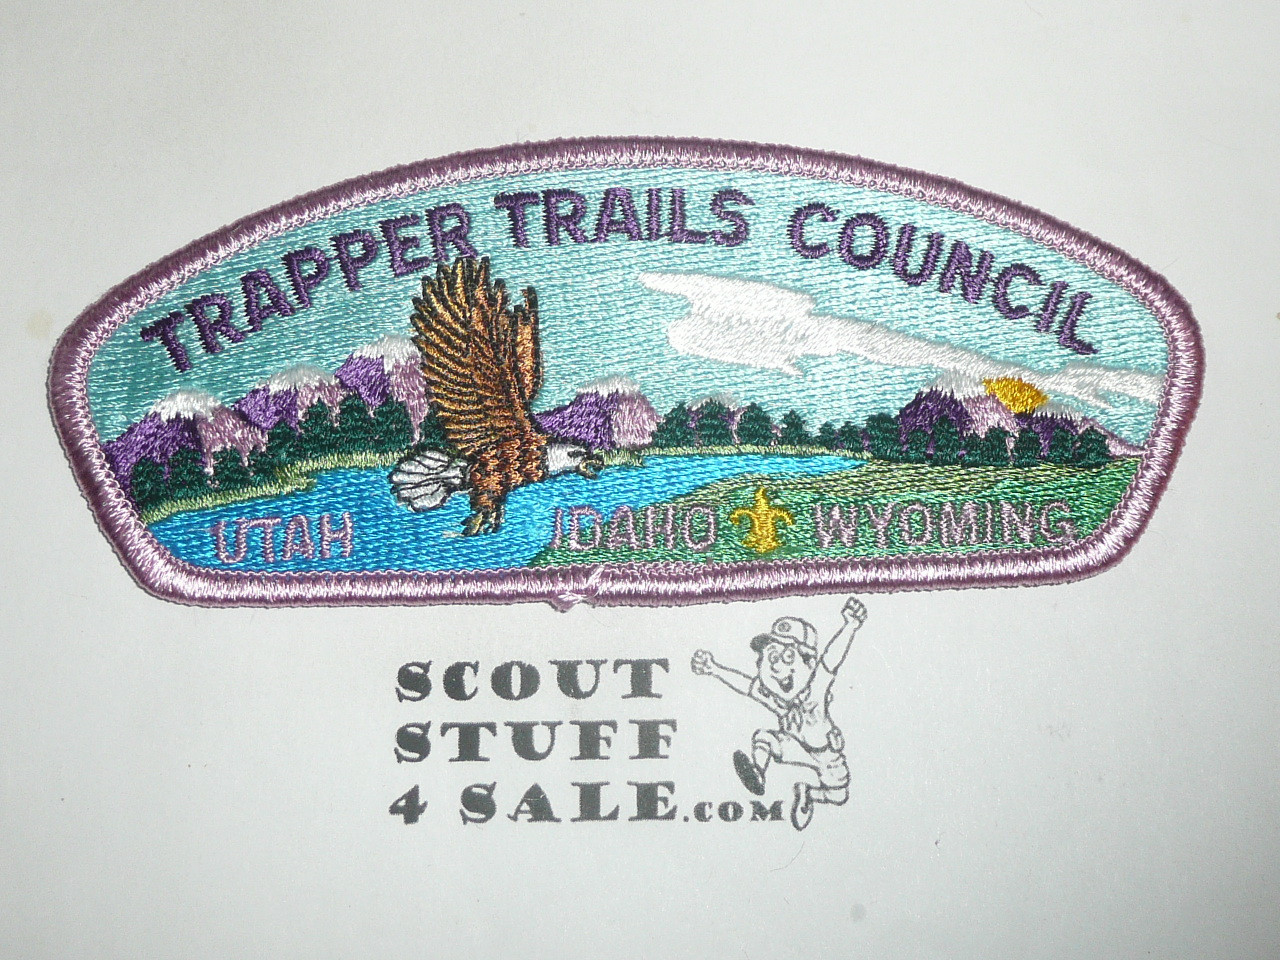 Trapper Trails Council s5 CSP - Scout